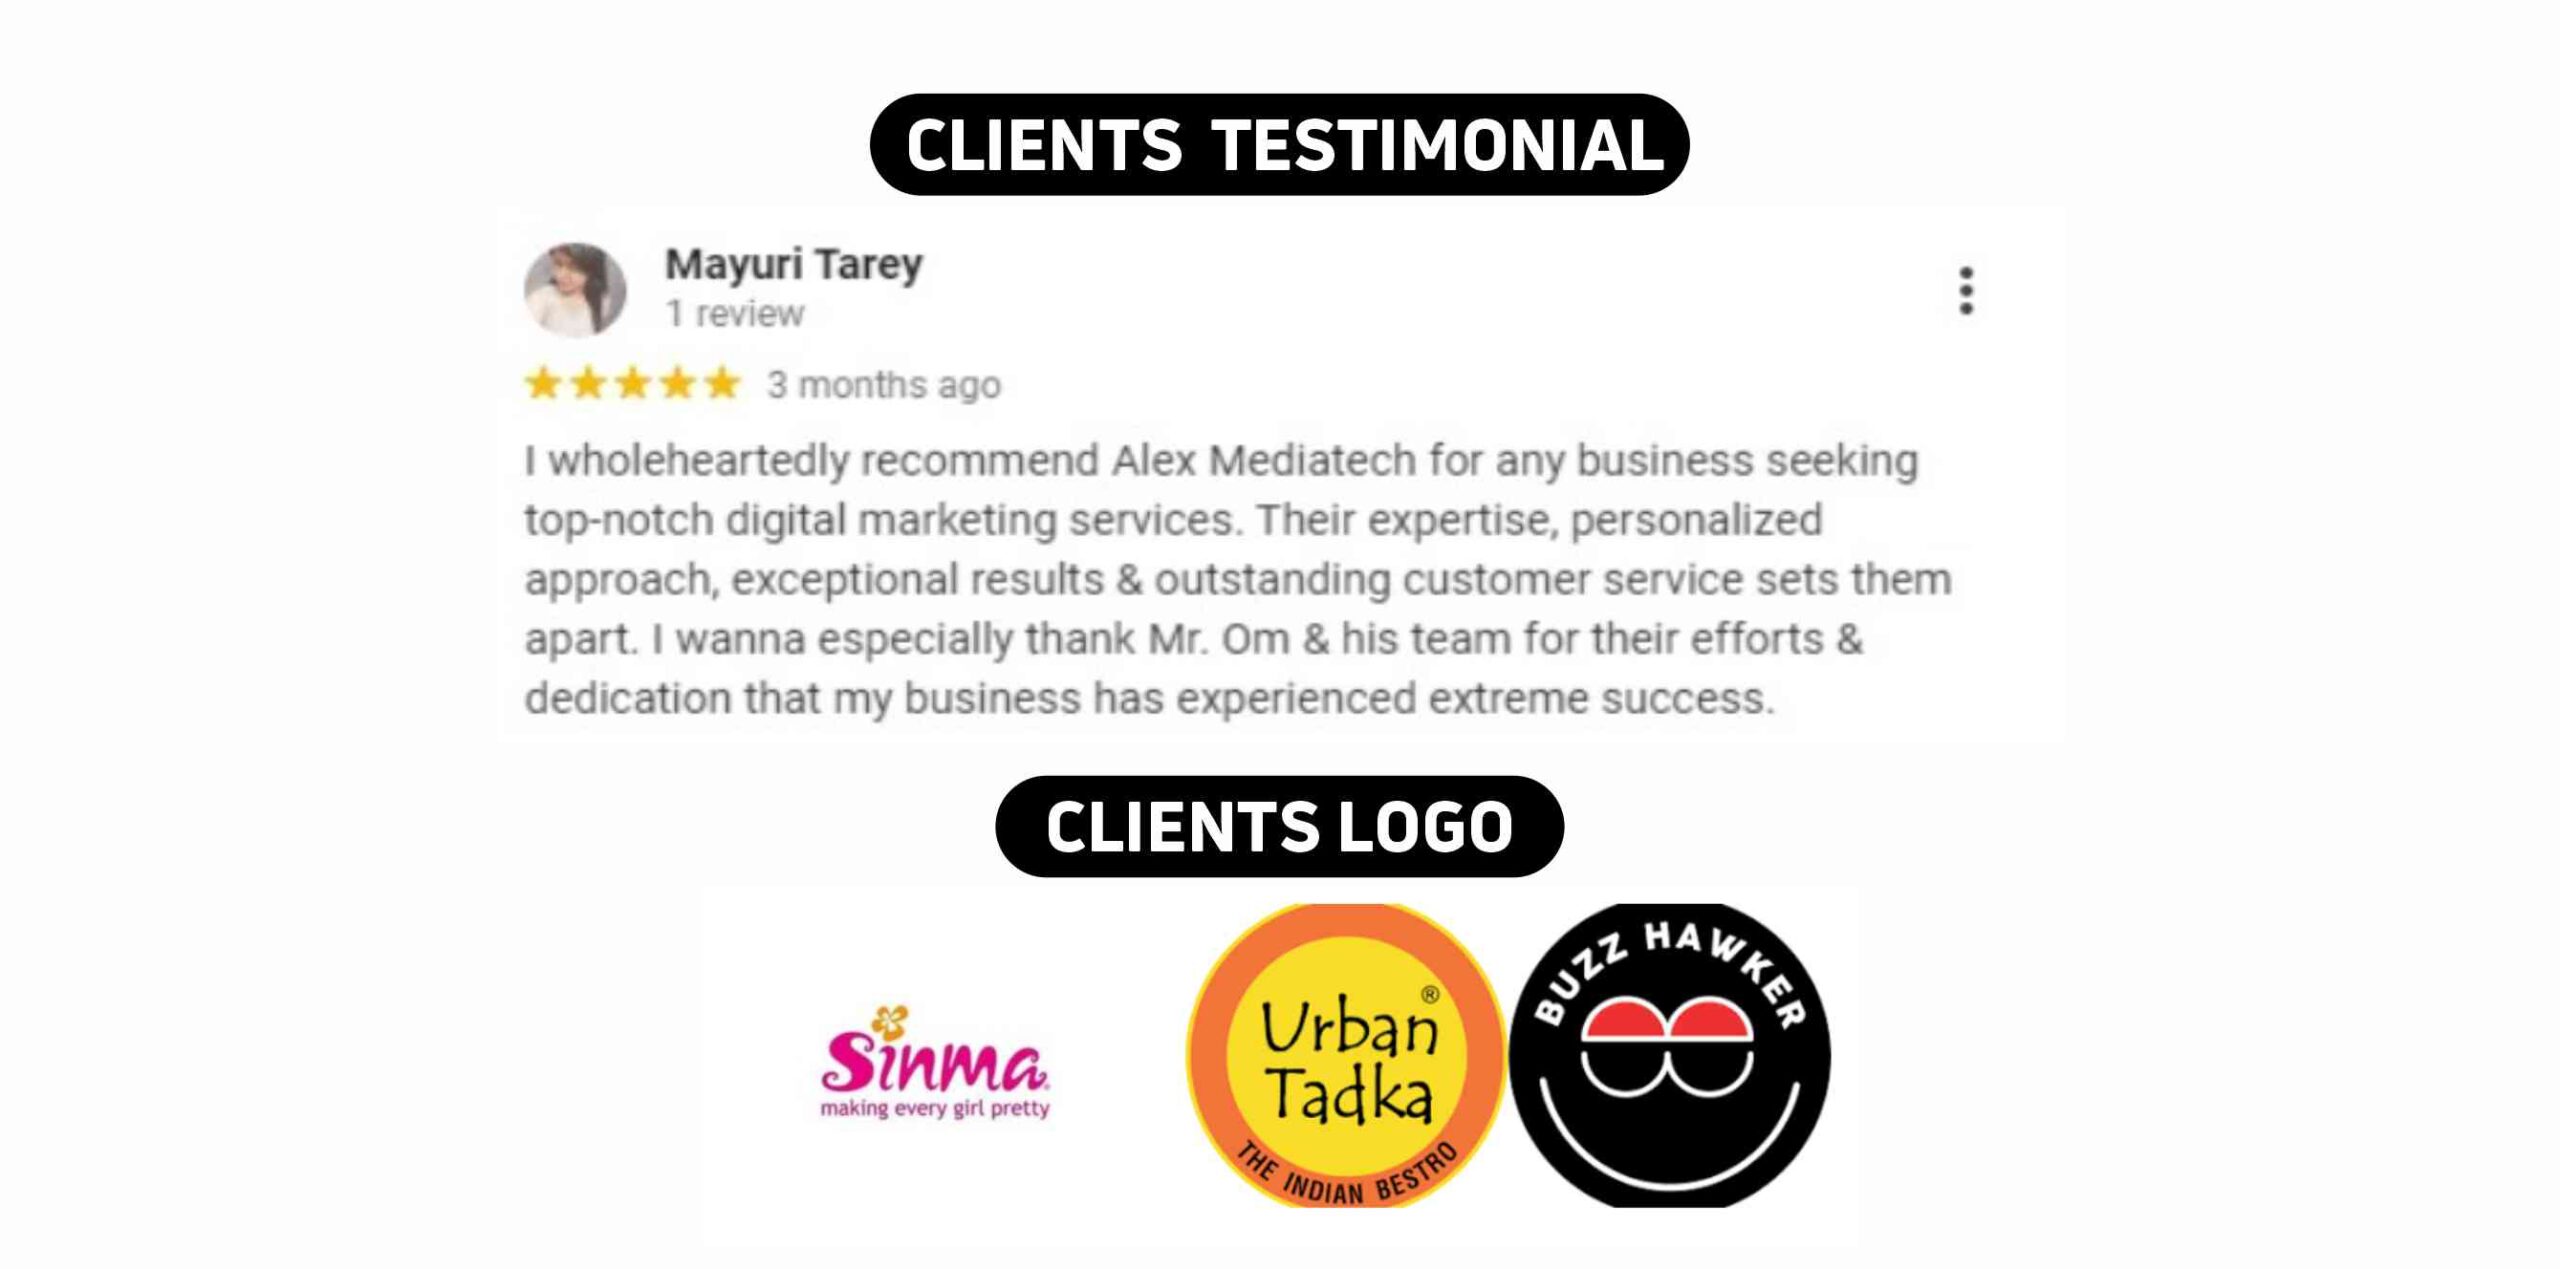 Alex Mediatech Clients Testimonials & Logos